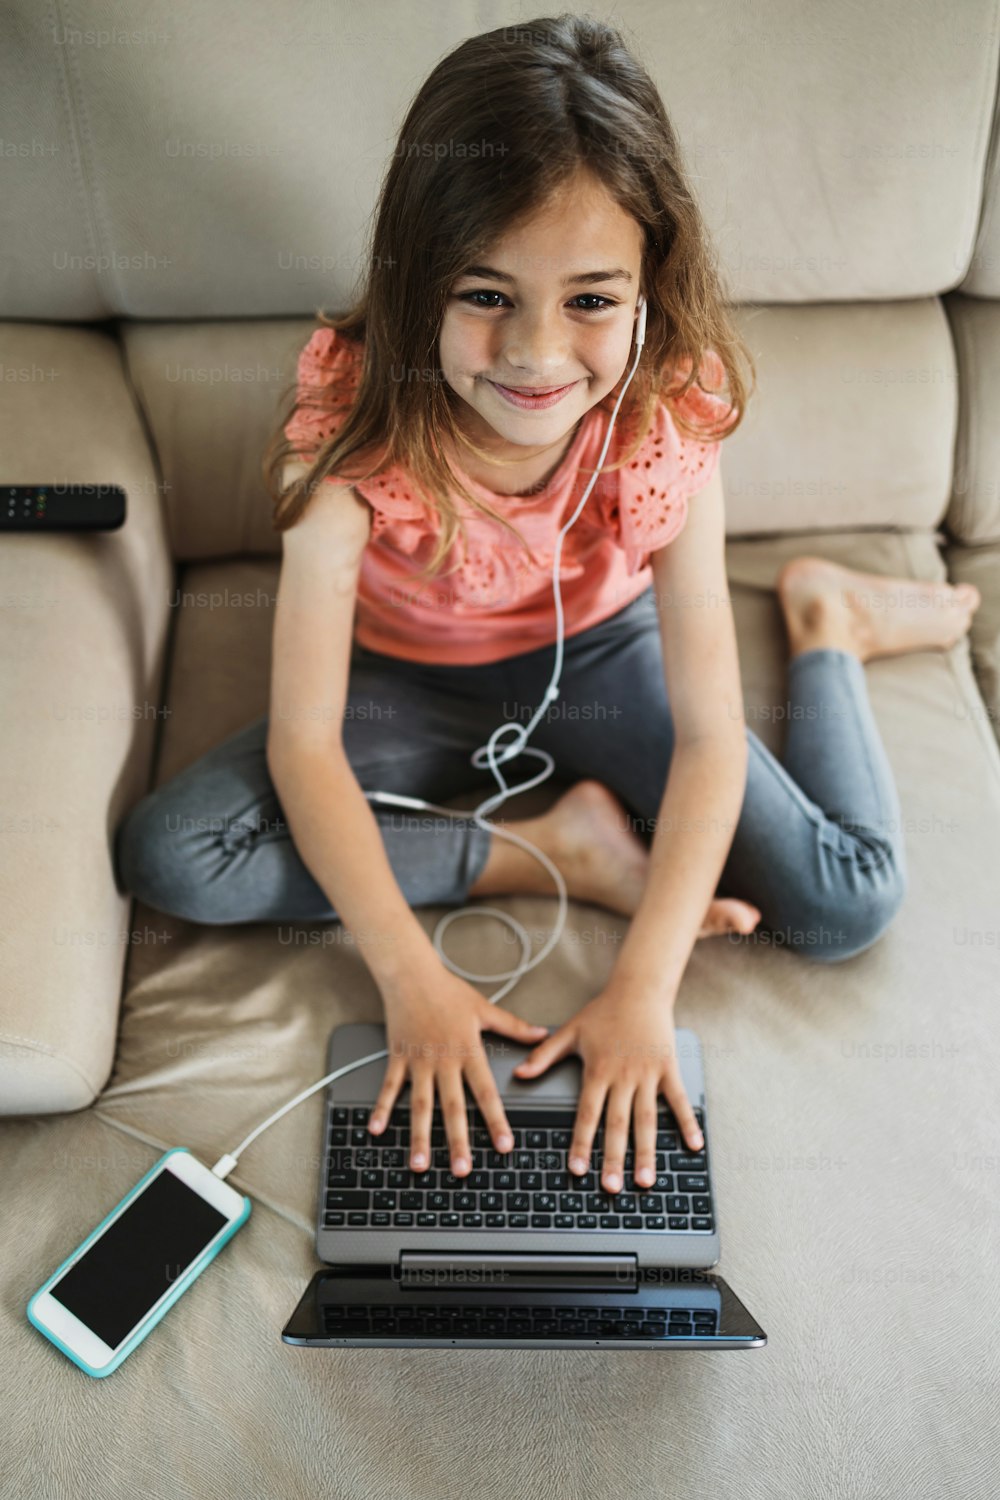 Menina bonita deita-se no sofá da sala de estar e usa um laptop para surfar, aprender e comunicação. Ela está feliz e sorriu.